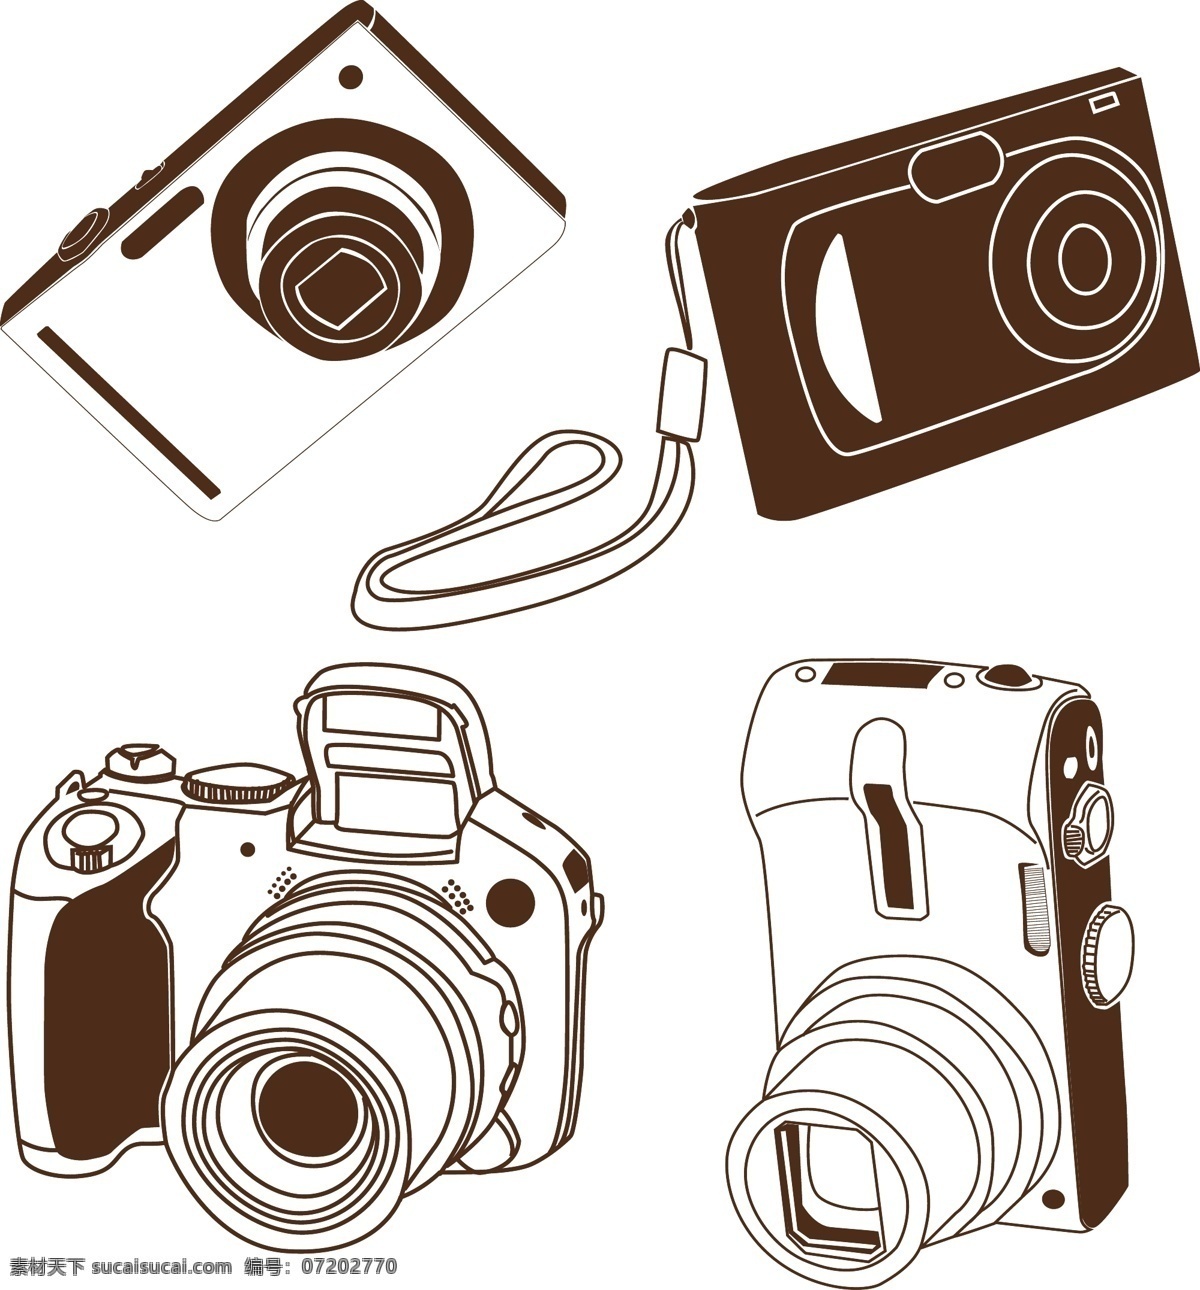 数码 照相机 生活百科 矢量 模板下载 数码照相机 矢量图 现代科技